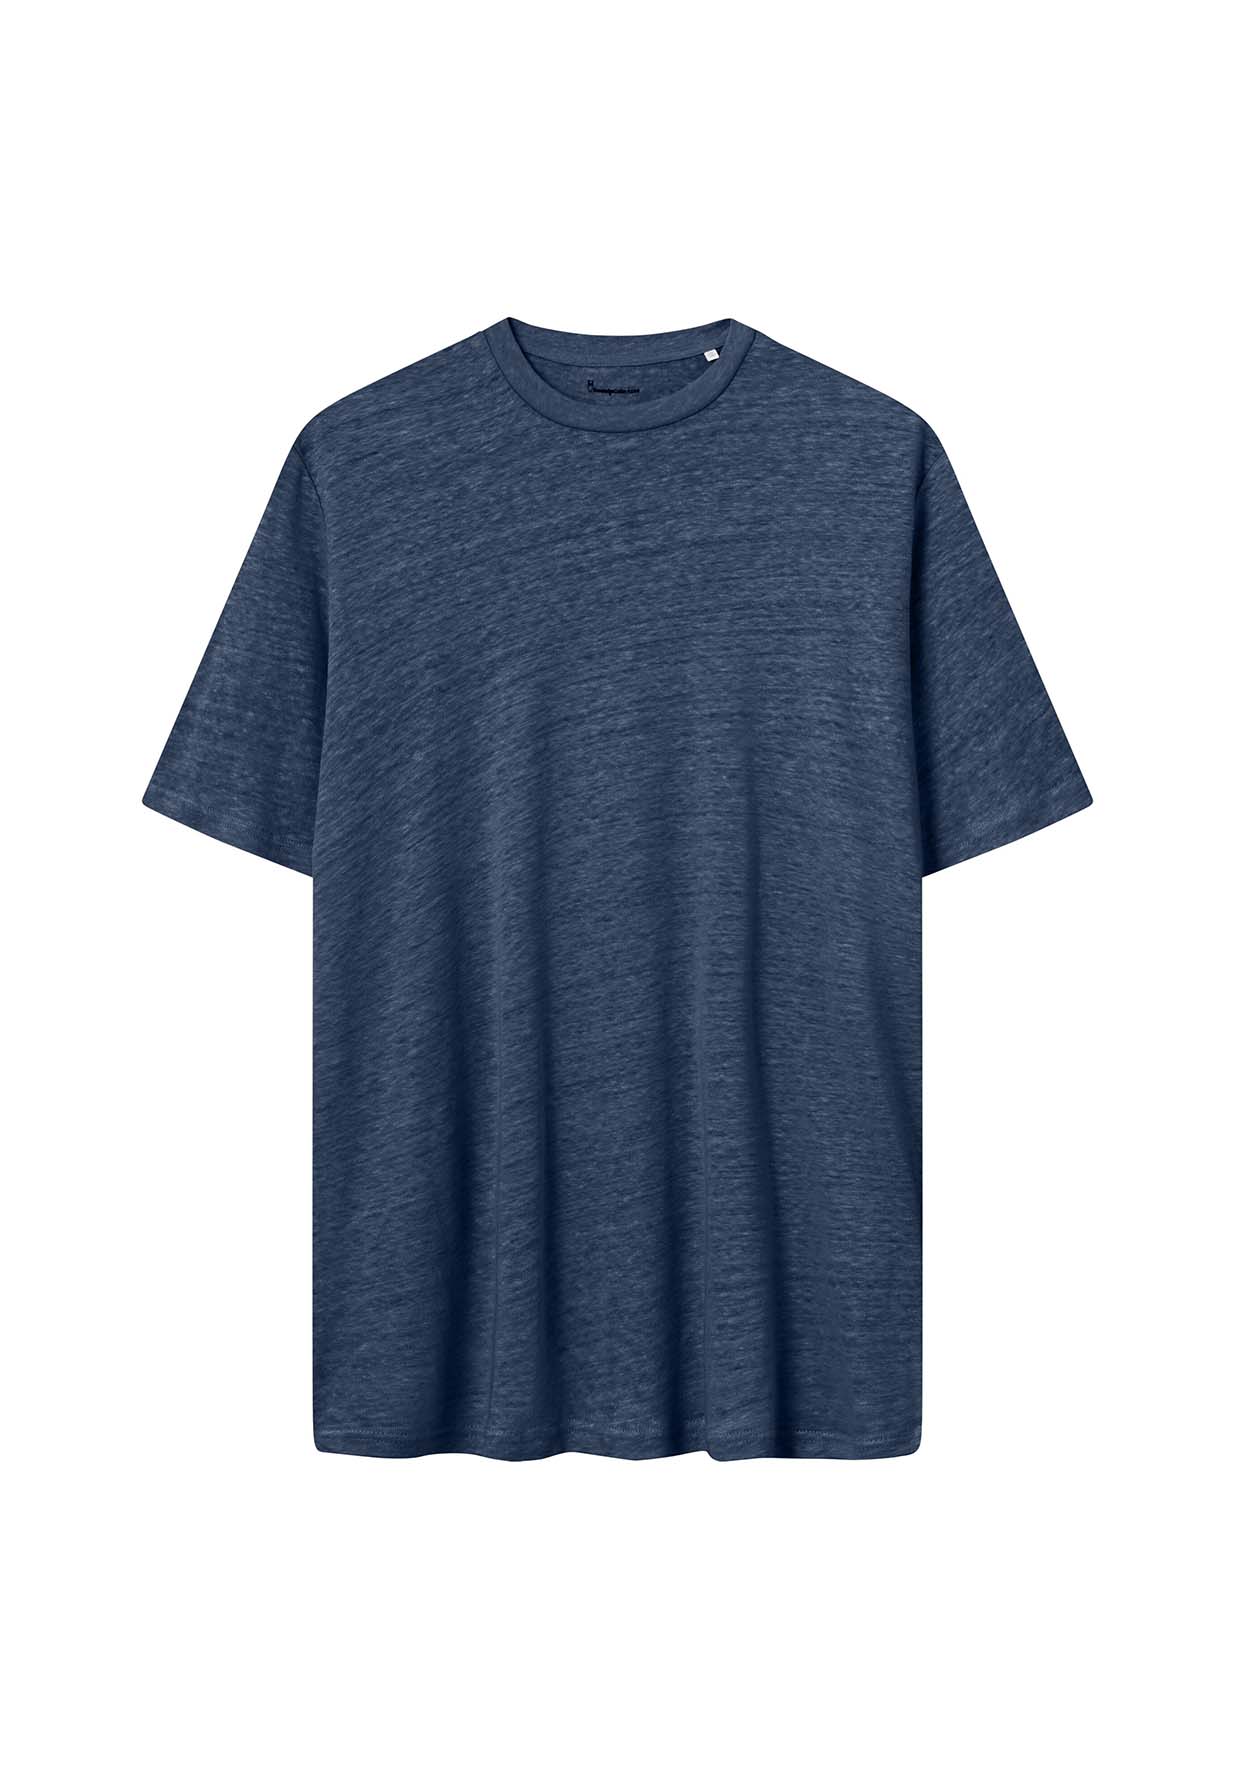 KNOWLEDGECOTTON APPAREL Linen T-Shirt total eclipse S